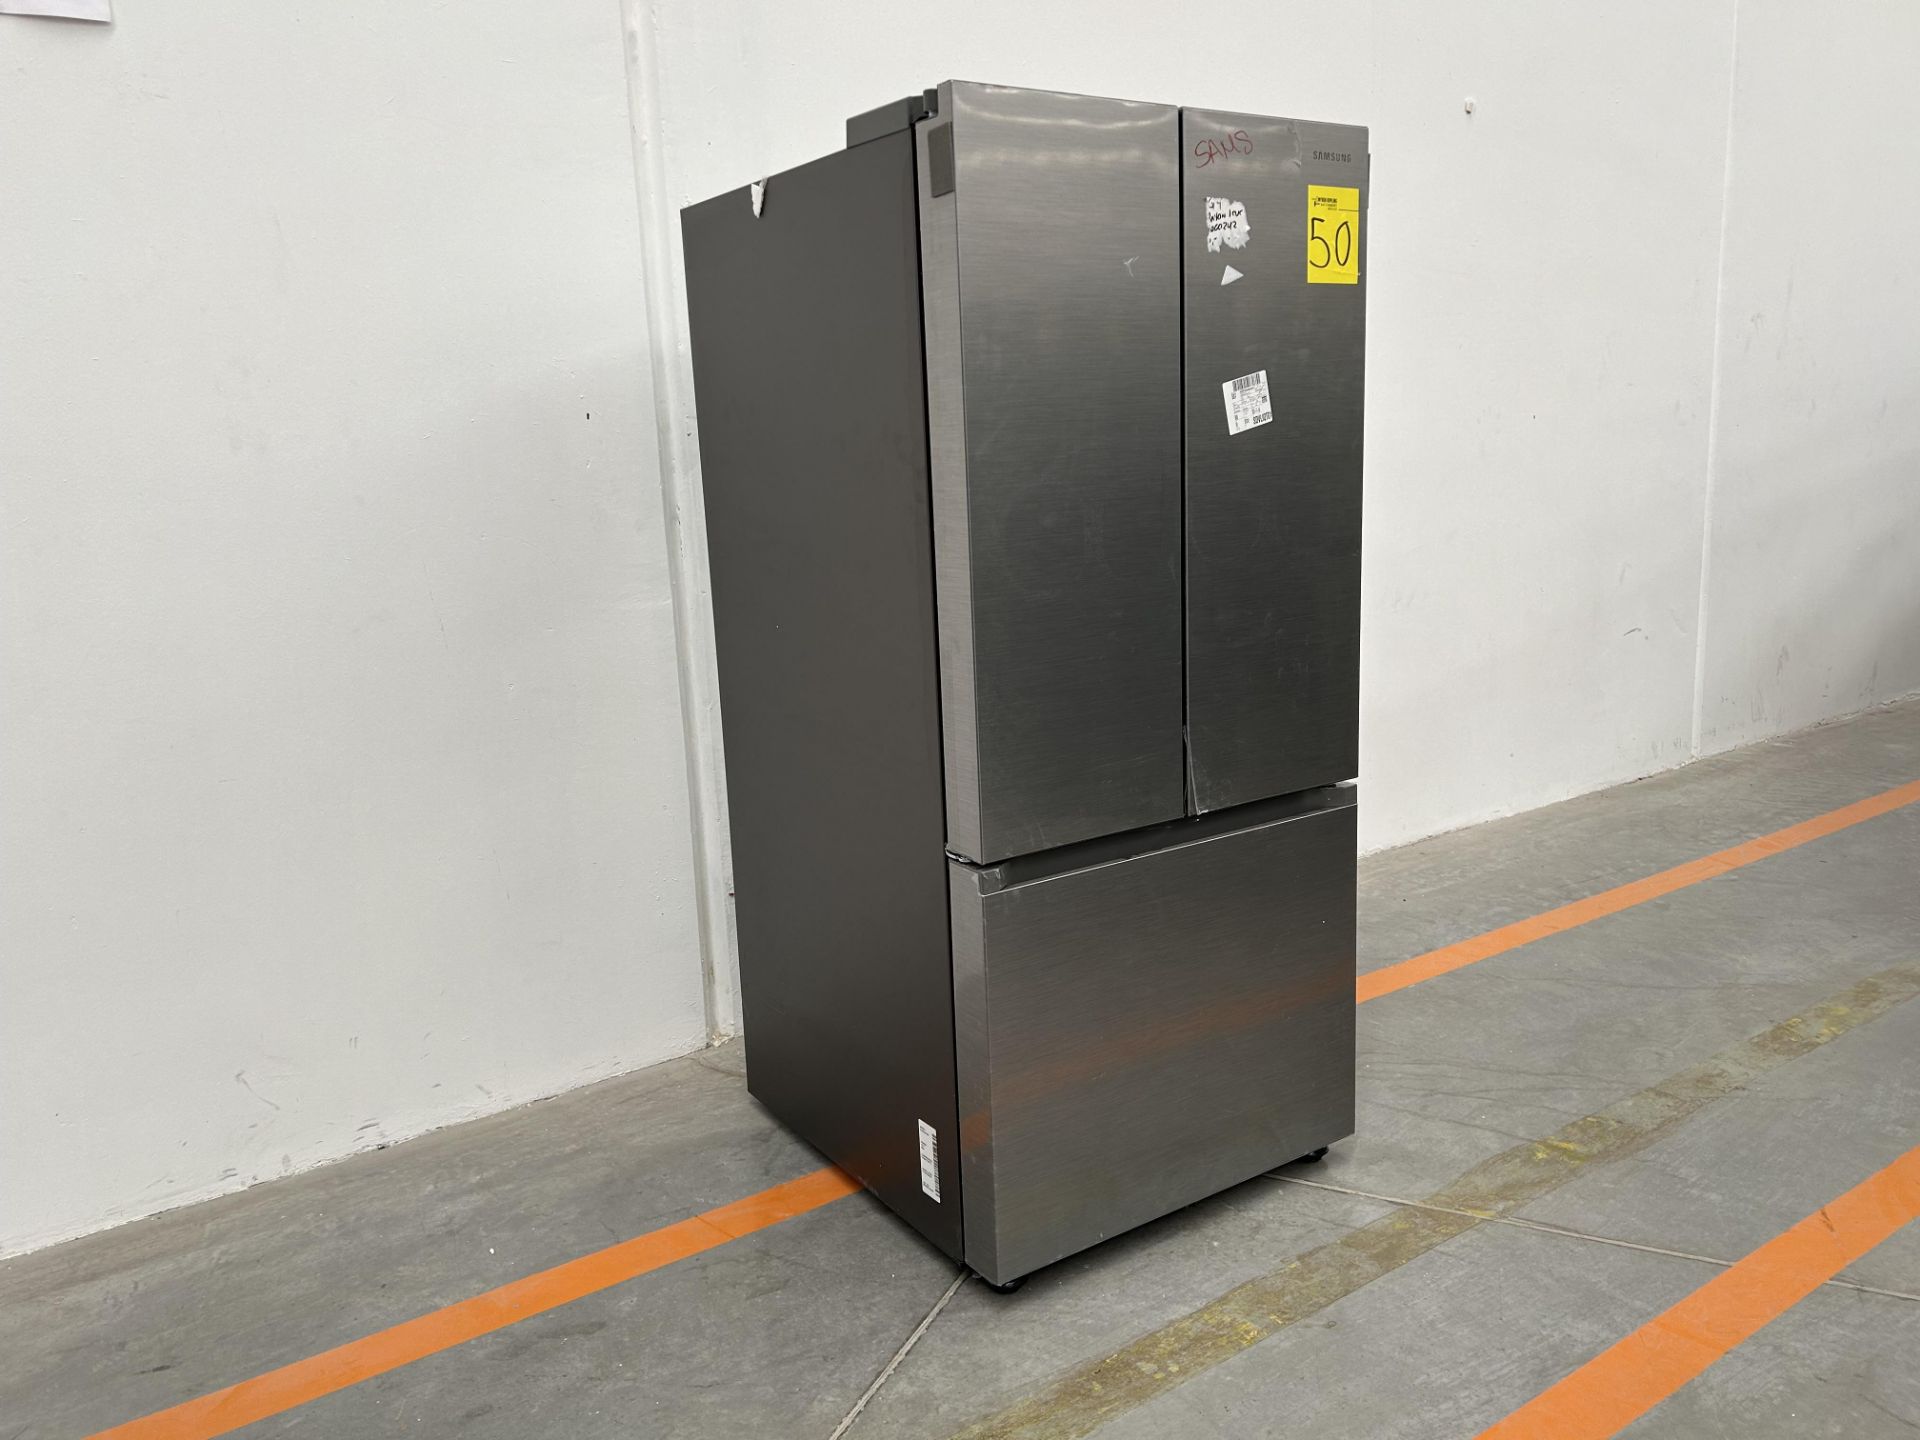 (NUEVO) Refrigerador Marca SAMSUNG, Modelo RF22A410S9, Serie 01875P, Color GRIS - Bild 3 aus 4